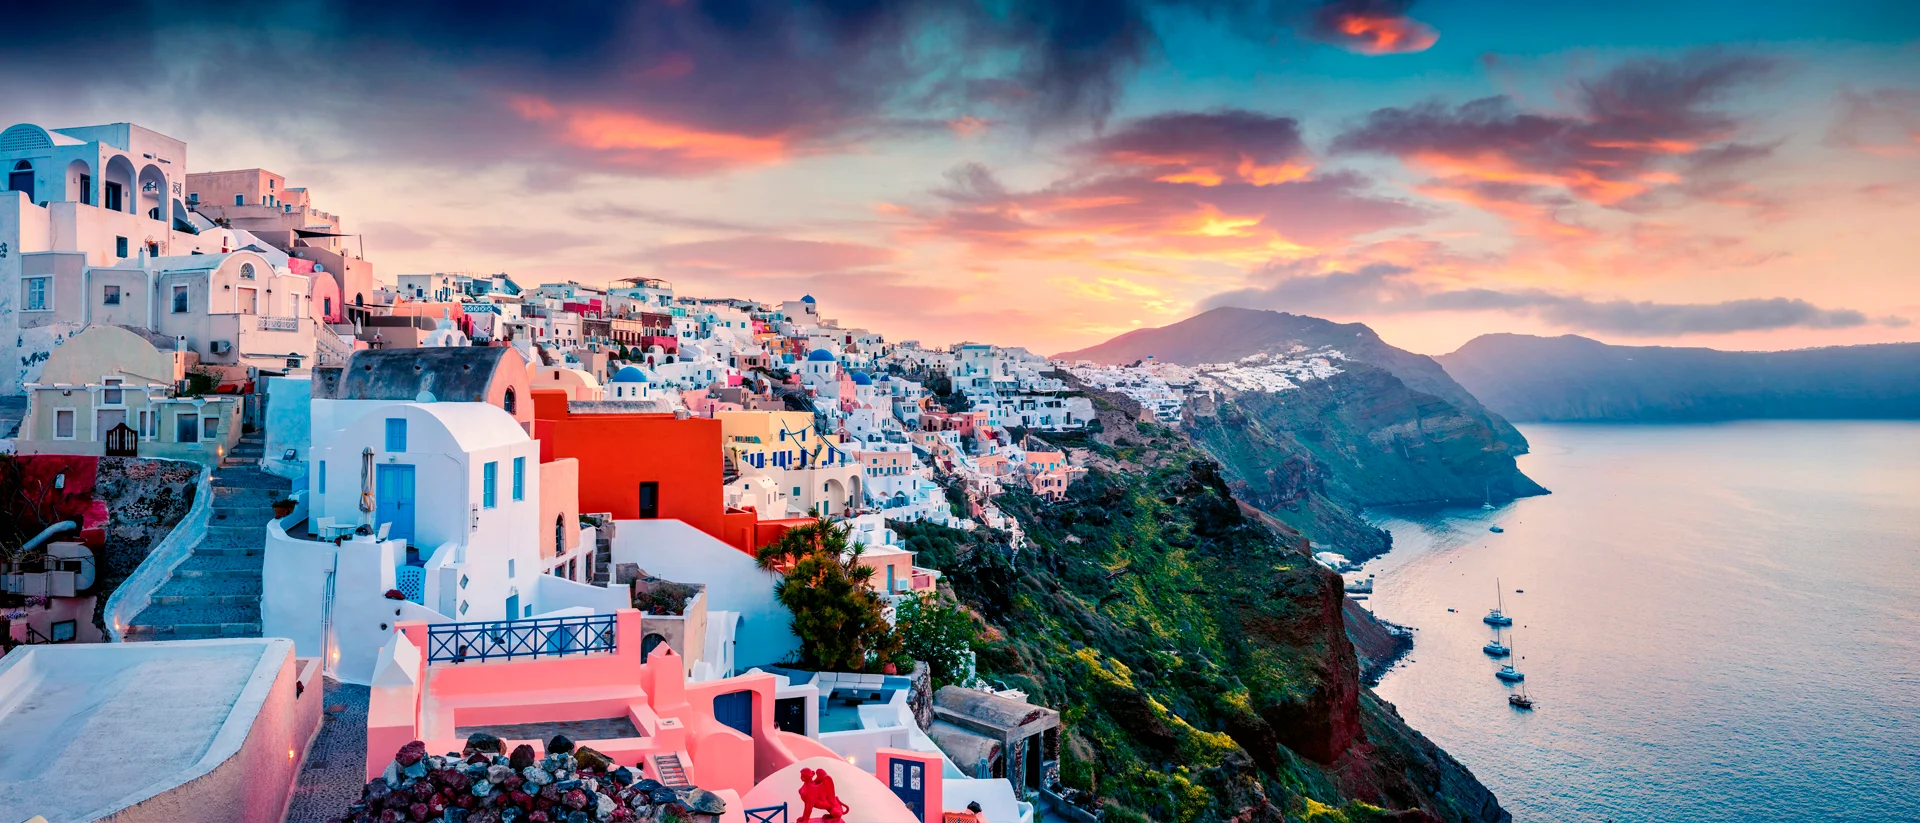 Mediterranean coloured village